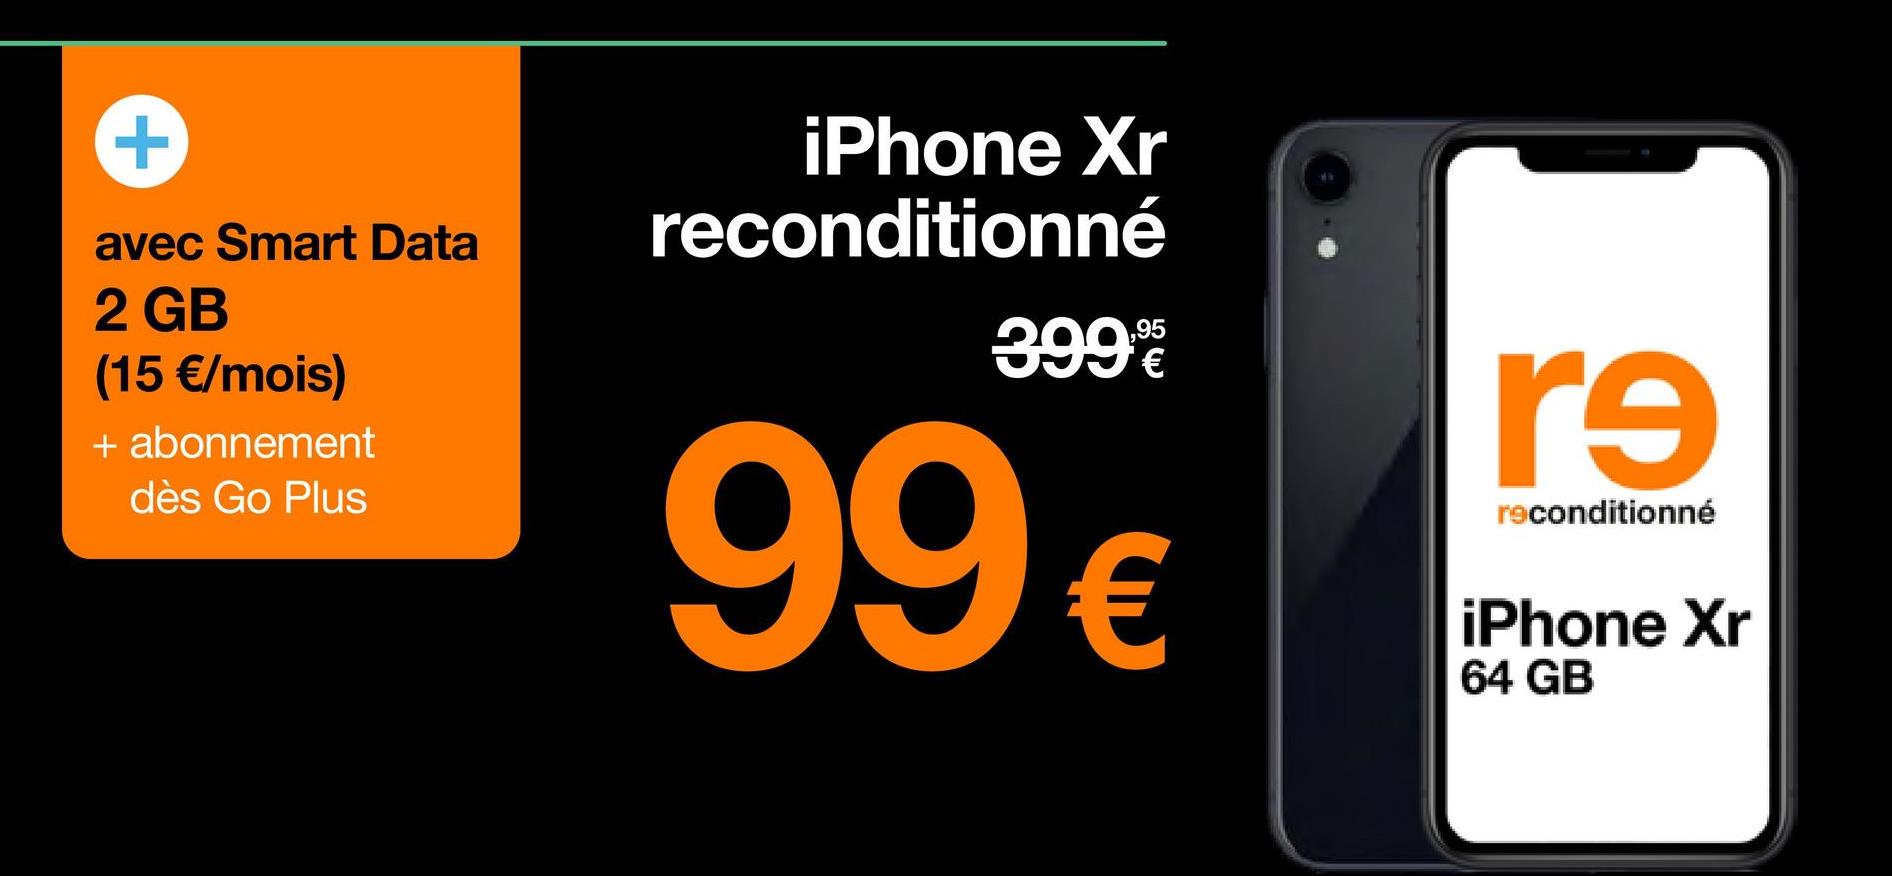 +
avec Smart Data
2 GB
(15 €/mois)
+ abonnement
dès Go Plus
iPhone Xr
reconditionné
399%
99 €
r9
reconditionné
iPhone Xr
64 GB